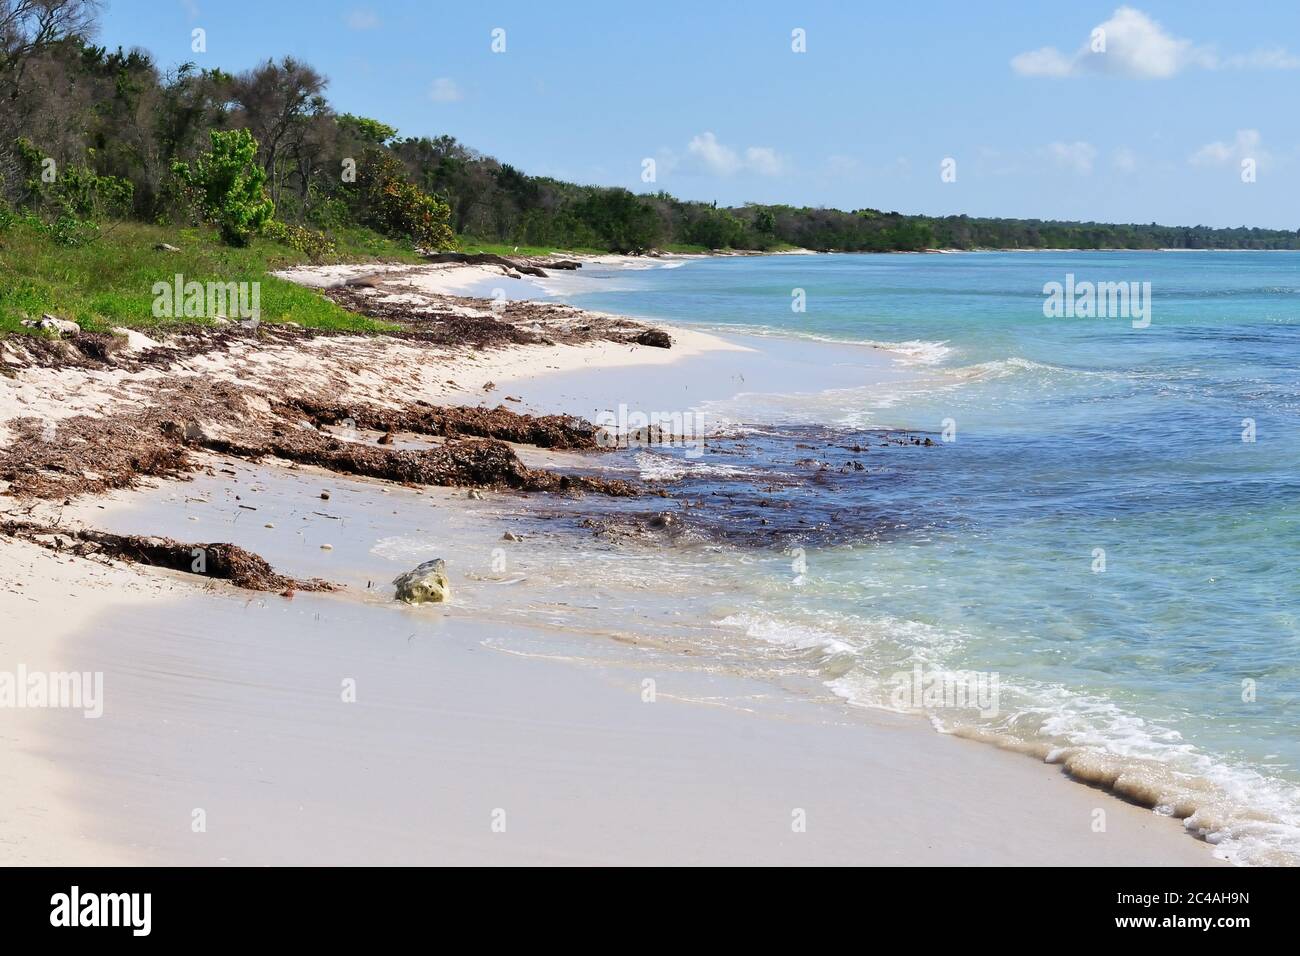 La vue sur la belle plage tropicale vide dans le parc national est, près de Bayahibe, République dominicaine Banque D'Images